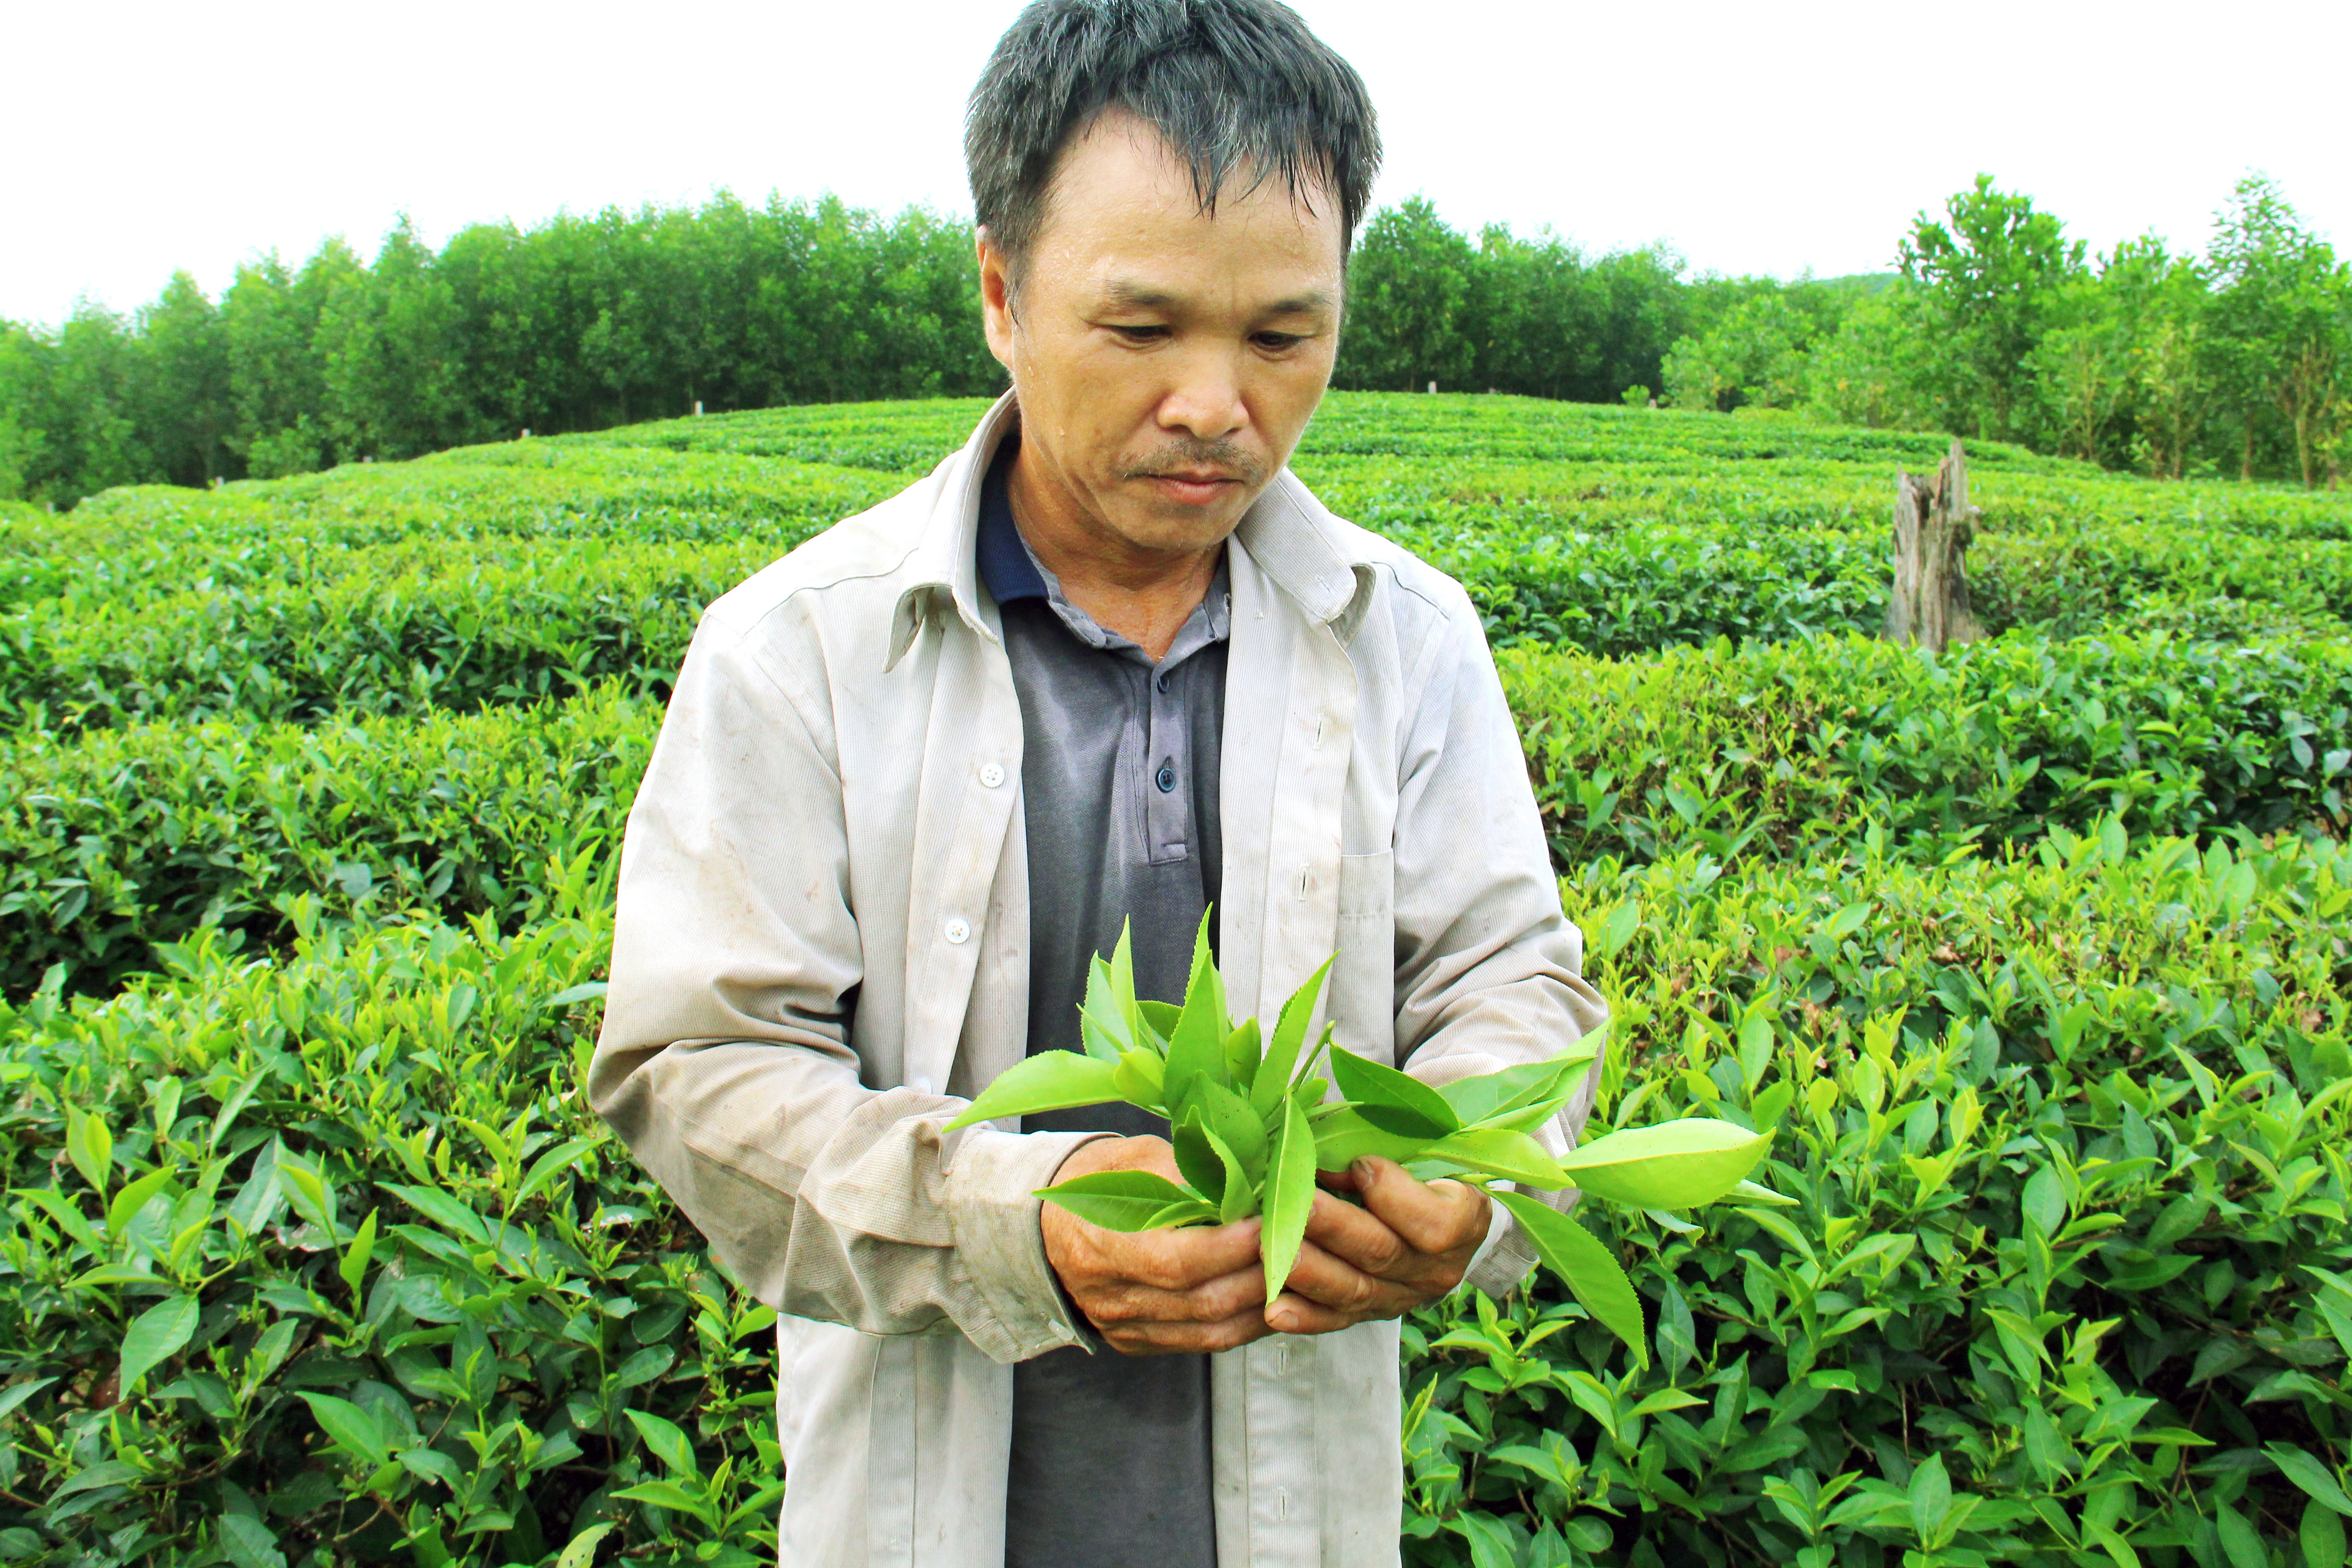 Sau những ngày đầu bỡ ngỡ tại vùng đất mới, anh Quang đã mạnh dạn trồng giống chè PH1 mang lại chất lượng và sản lượng cao